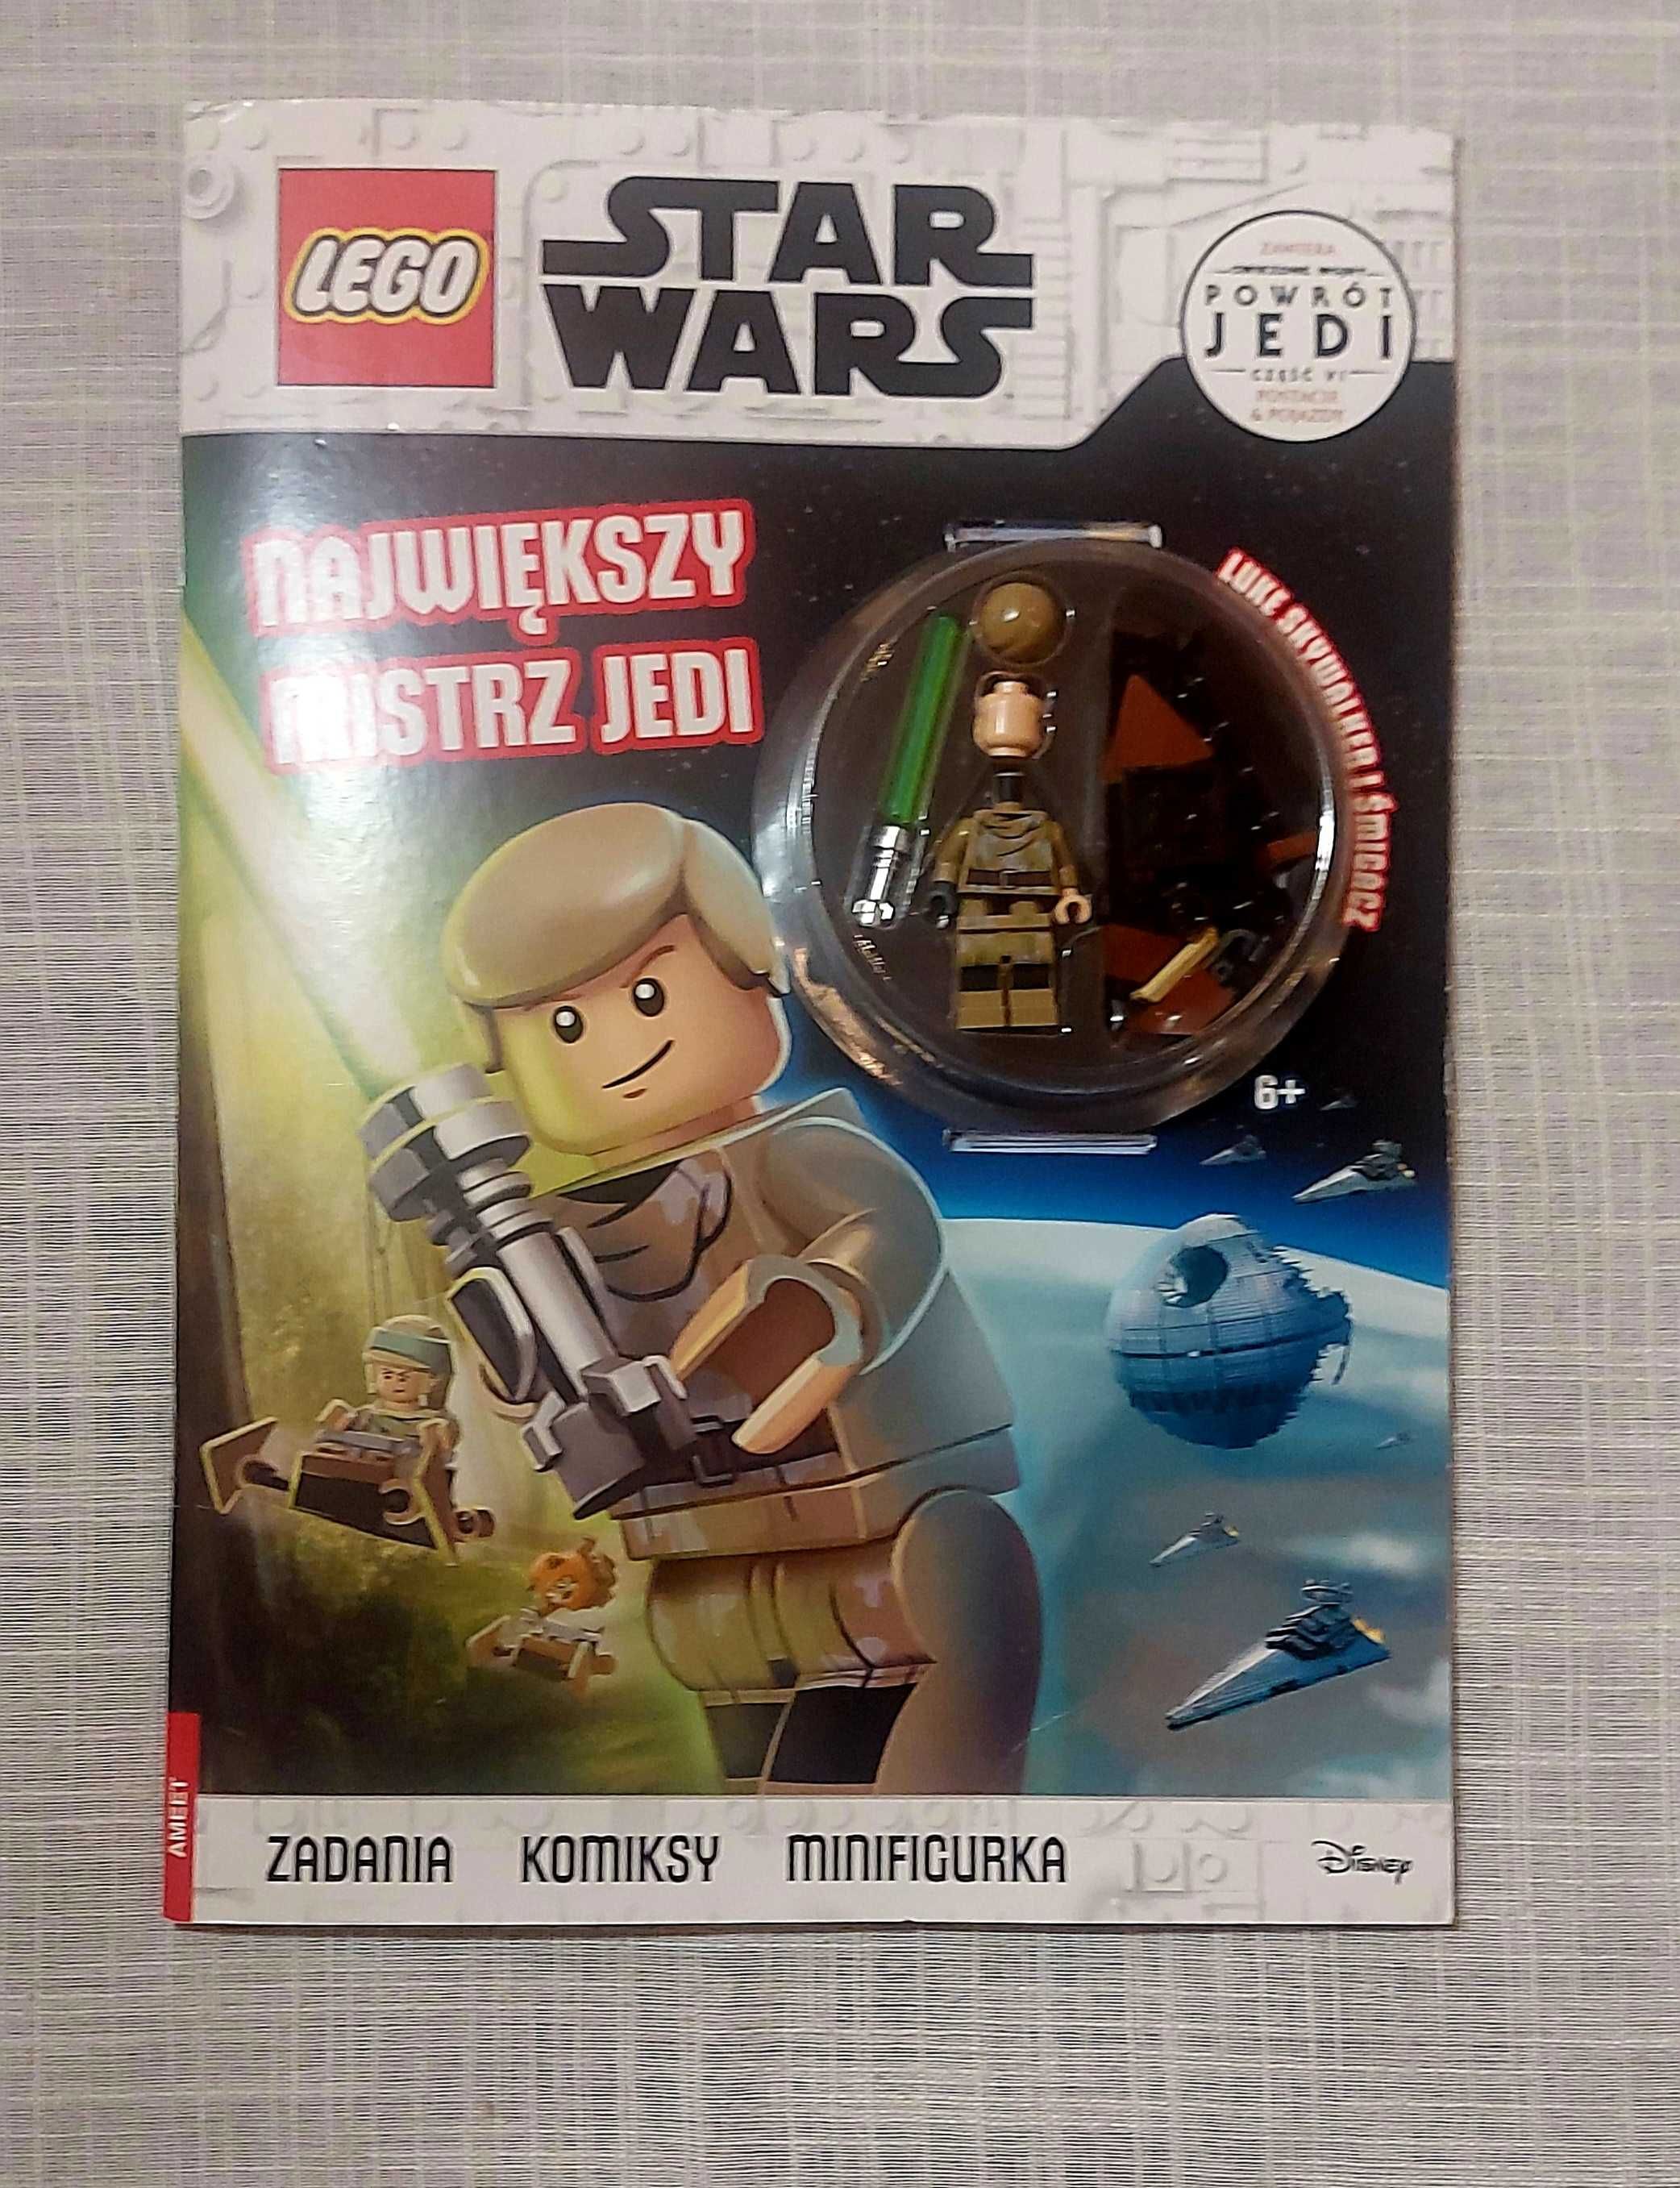 Gazetka Lego Star Wars z figurką Luke Skywalker